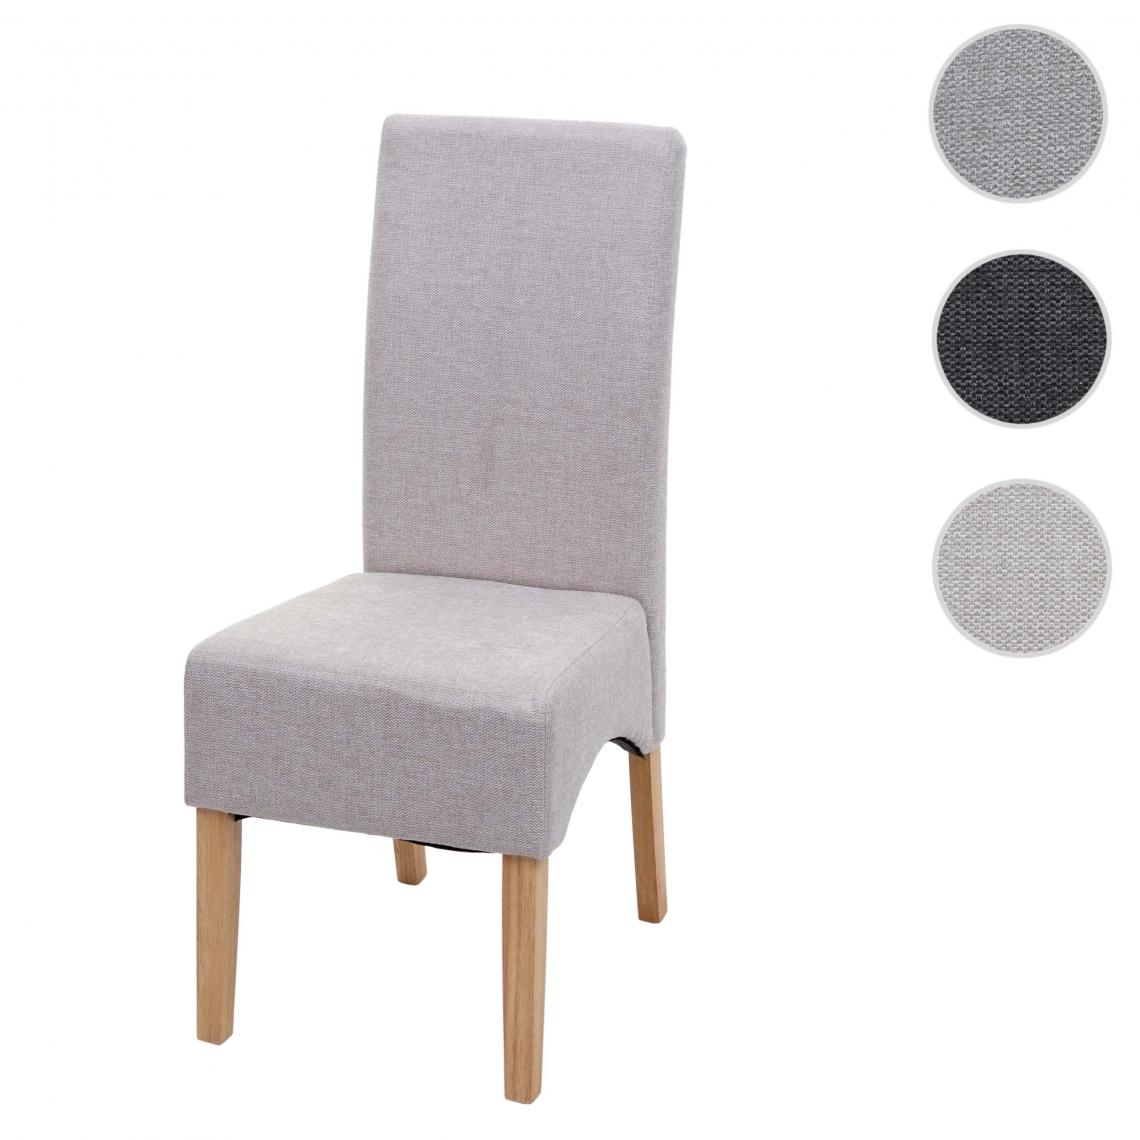 Mendler - Chaise à manger Latina, chaise de cuisine, tissu/textile ~ crème-beige, pieds clair - Chaises